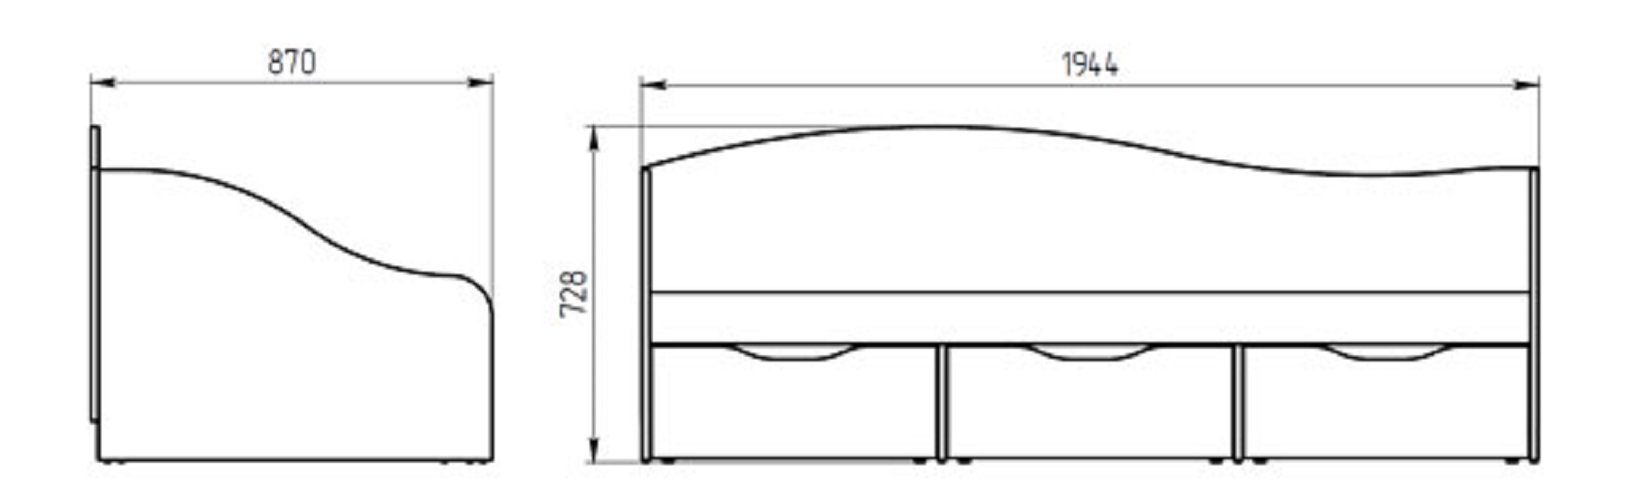 Feldmann-Wohnen Bett KOMBI, Liegefläche: 80 der cm, Cappuccino x Farbe in 190 